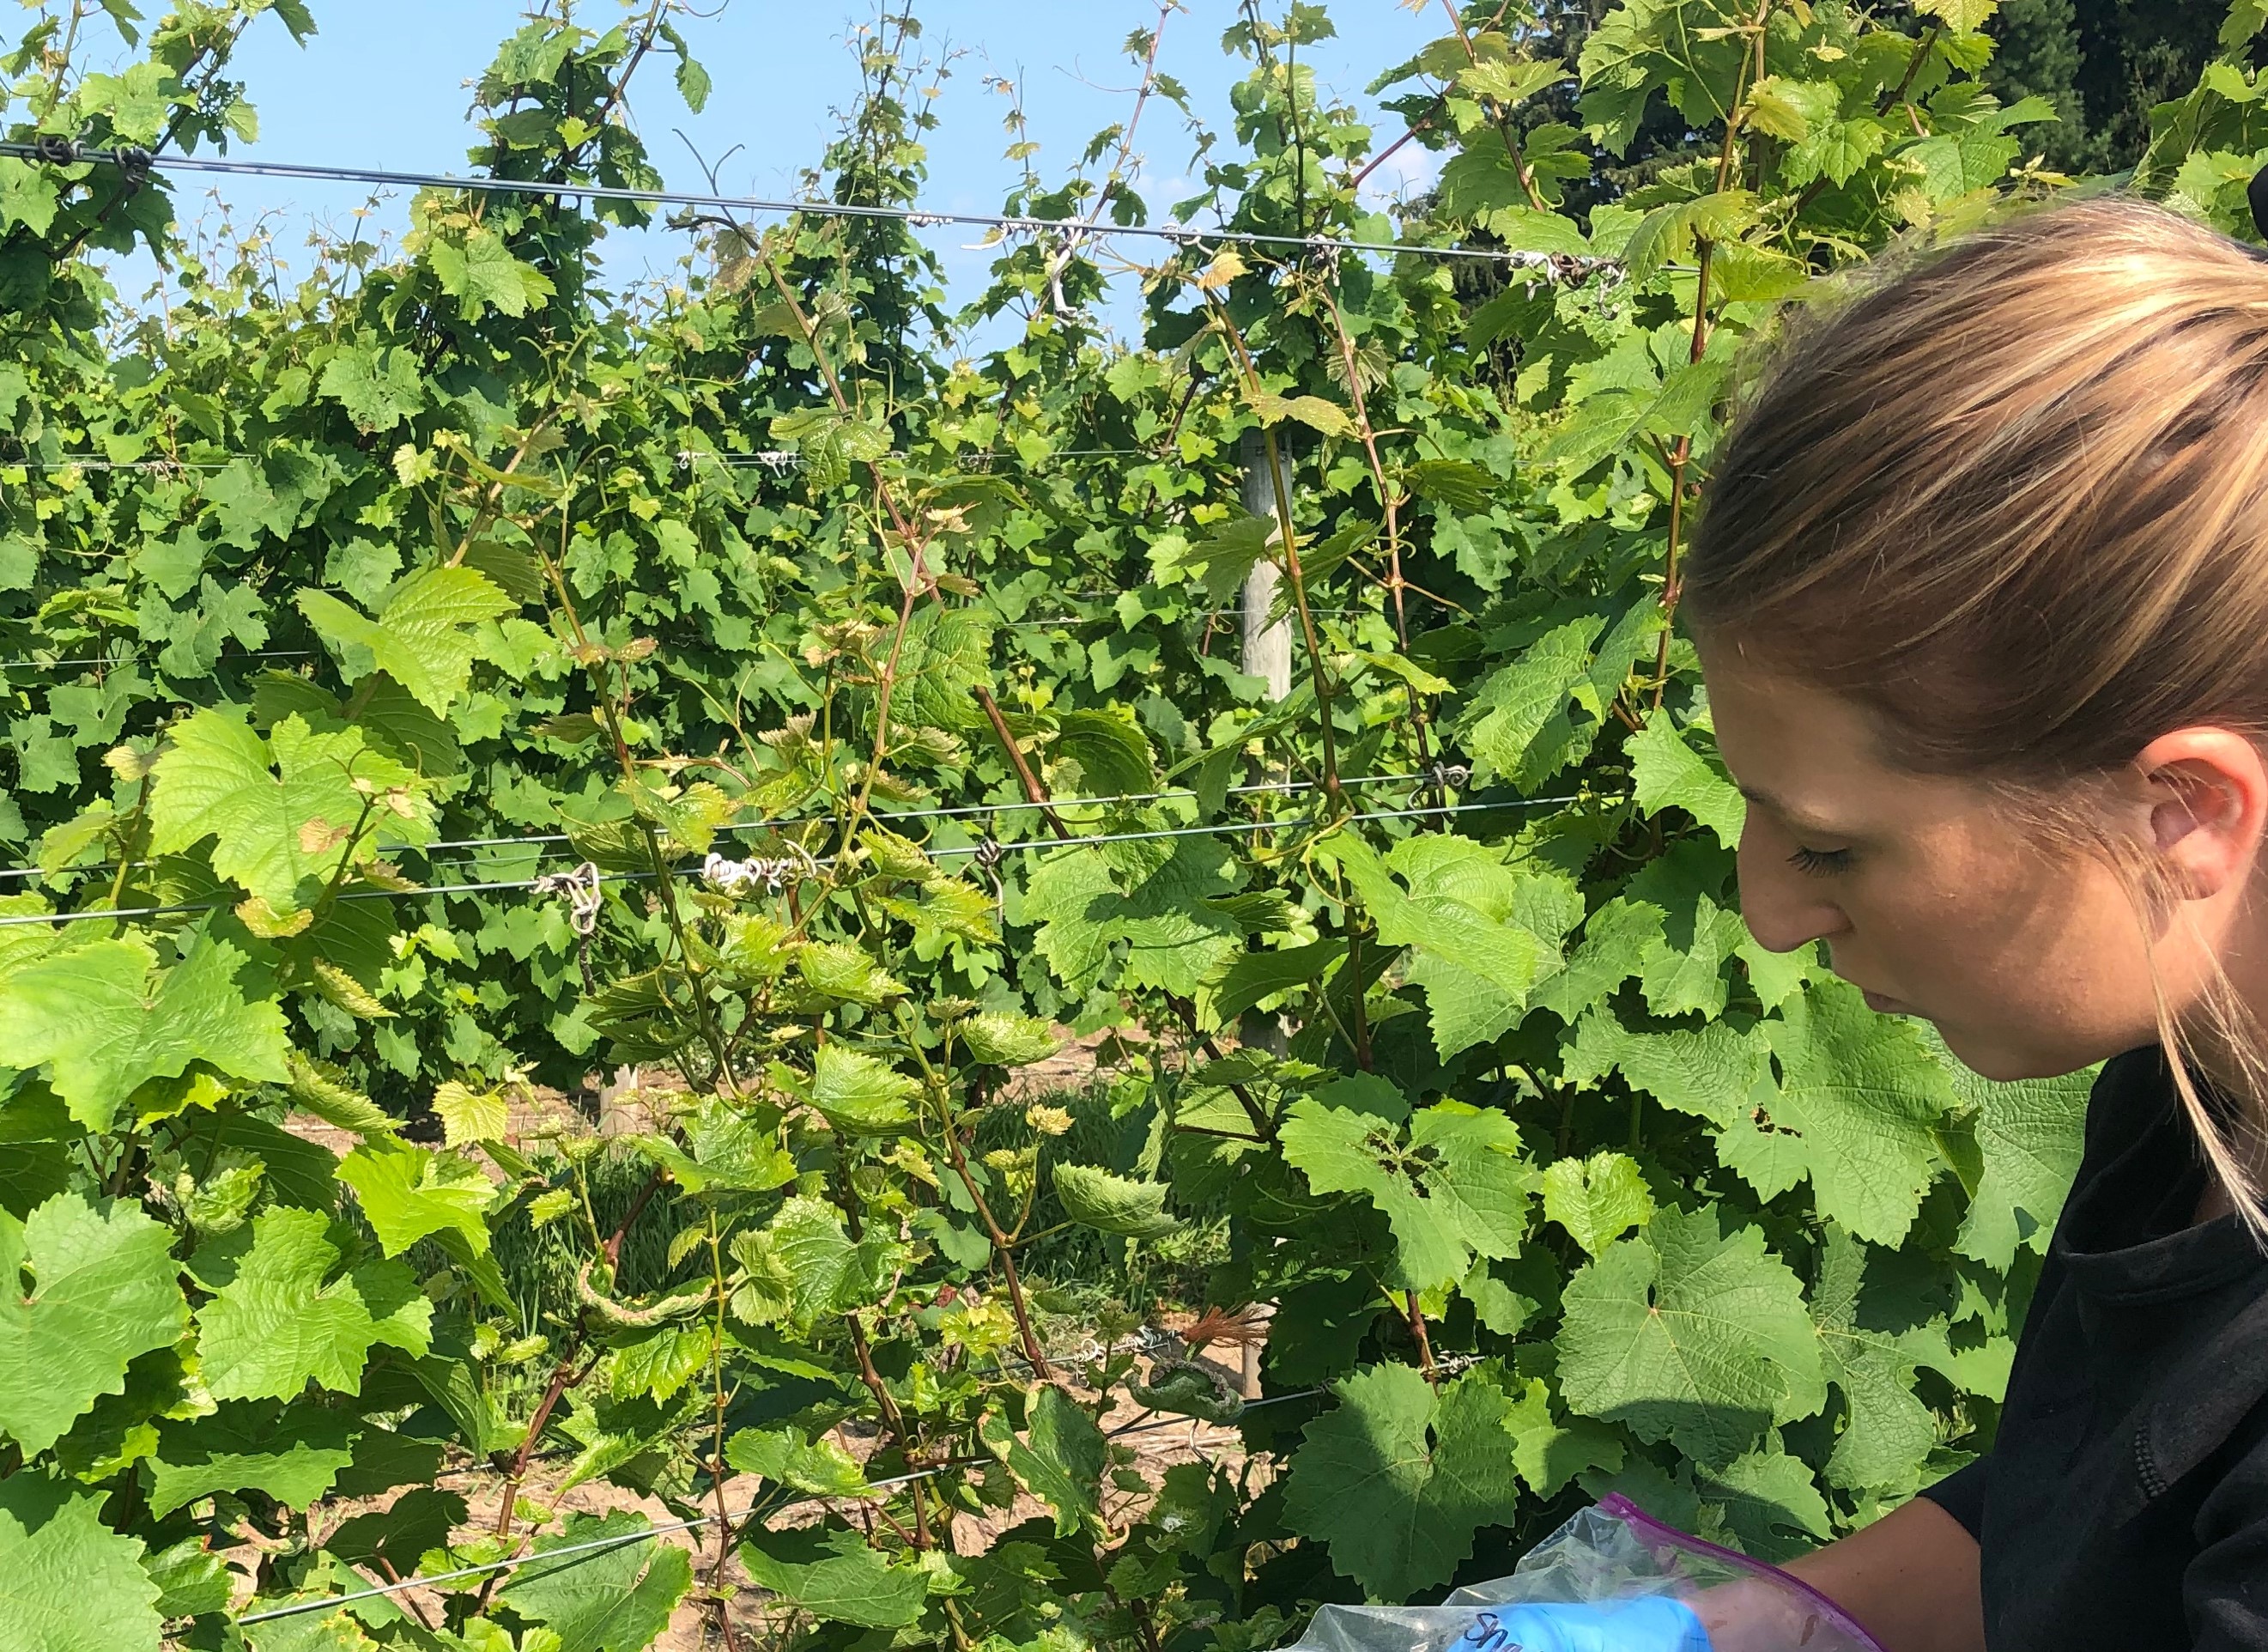 Sampling grape vines